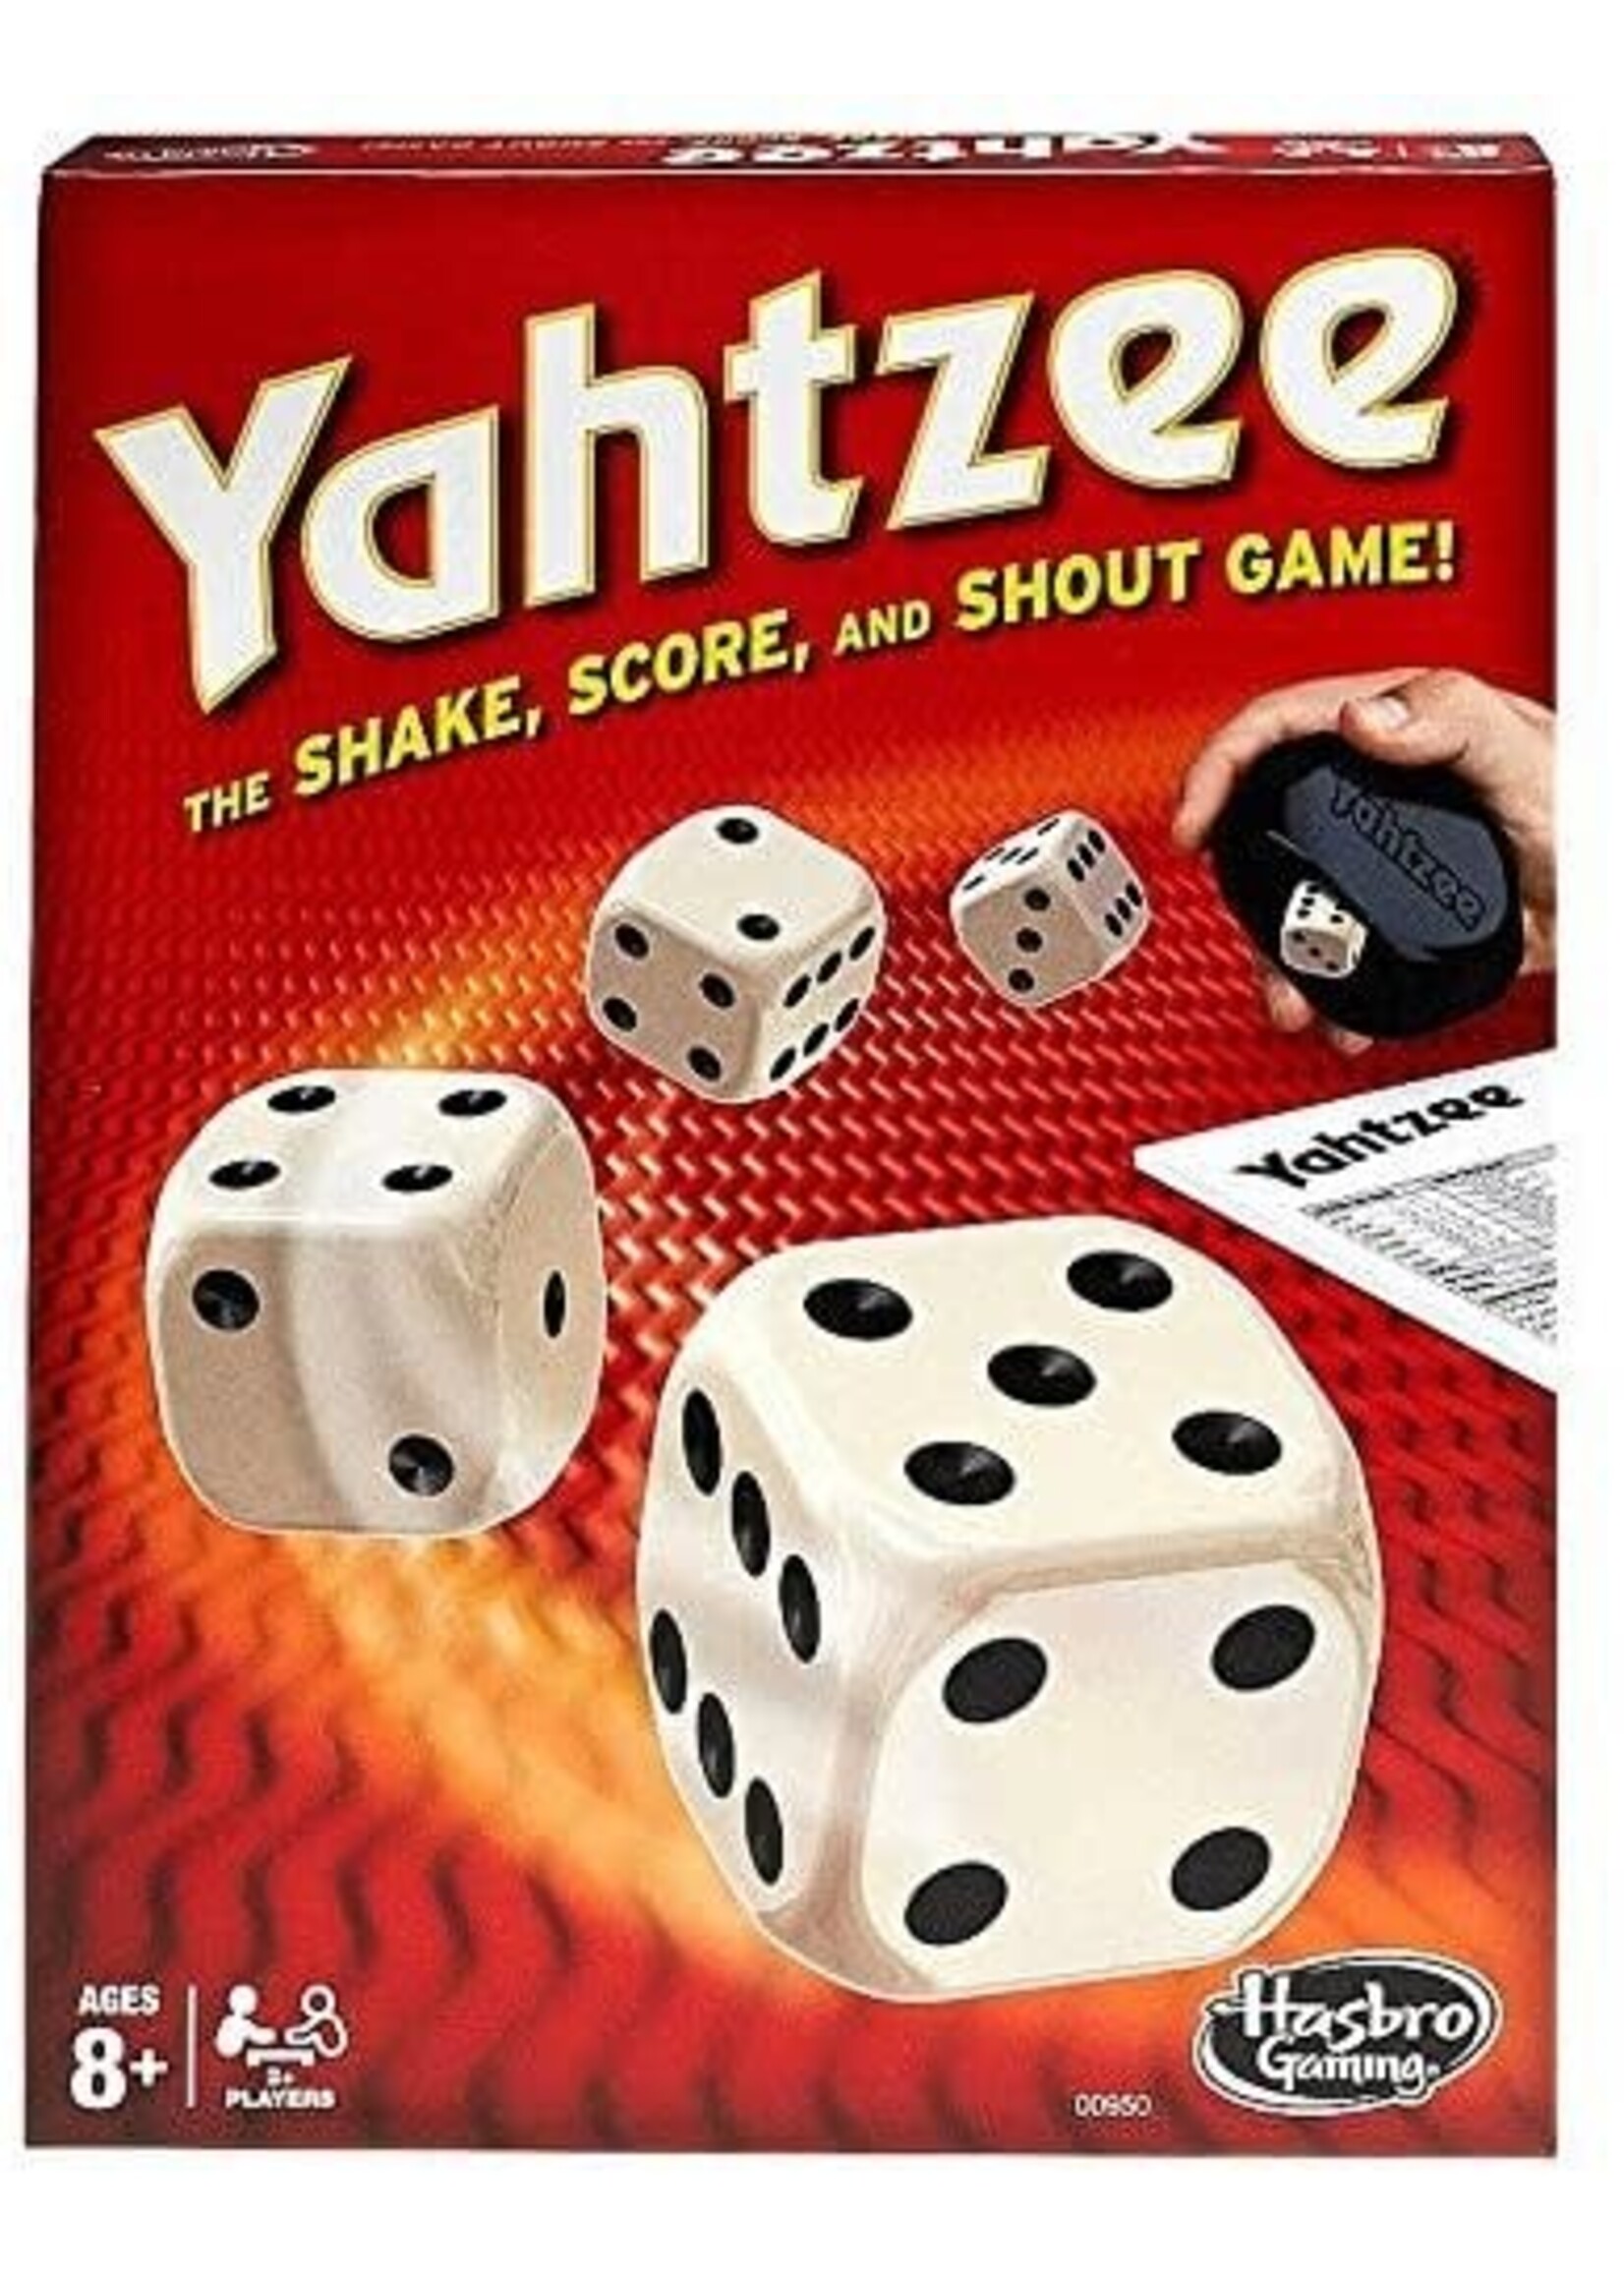 Hasbro Yahtzee